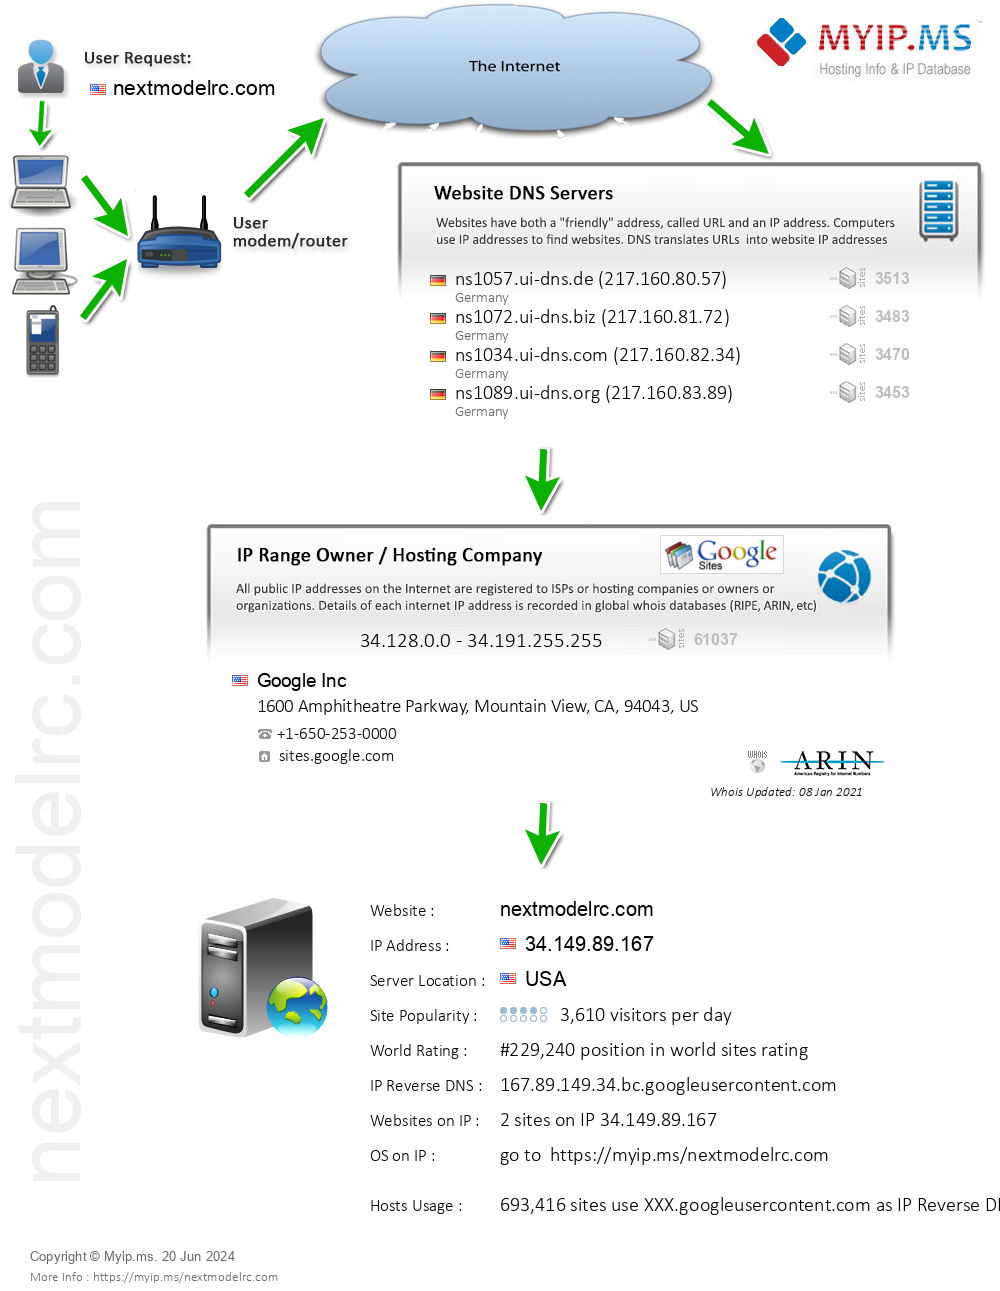 Nextmodelrc.com - Website Hosting Visual IP Diagram